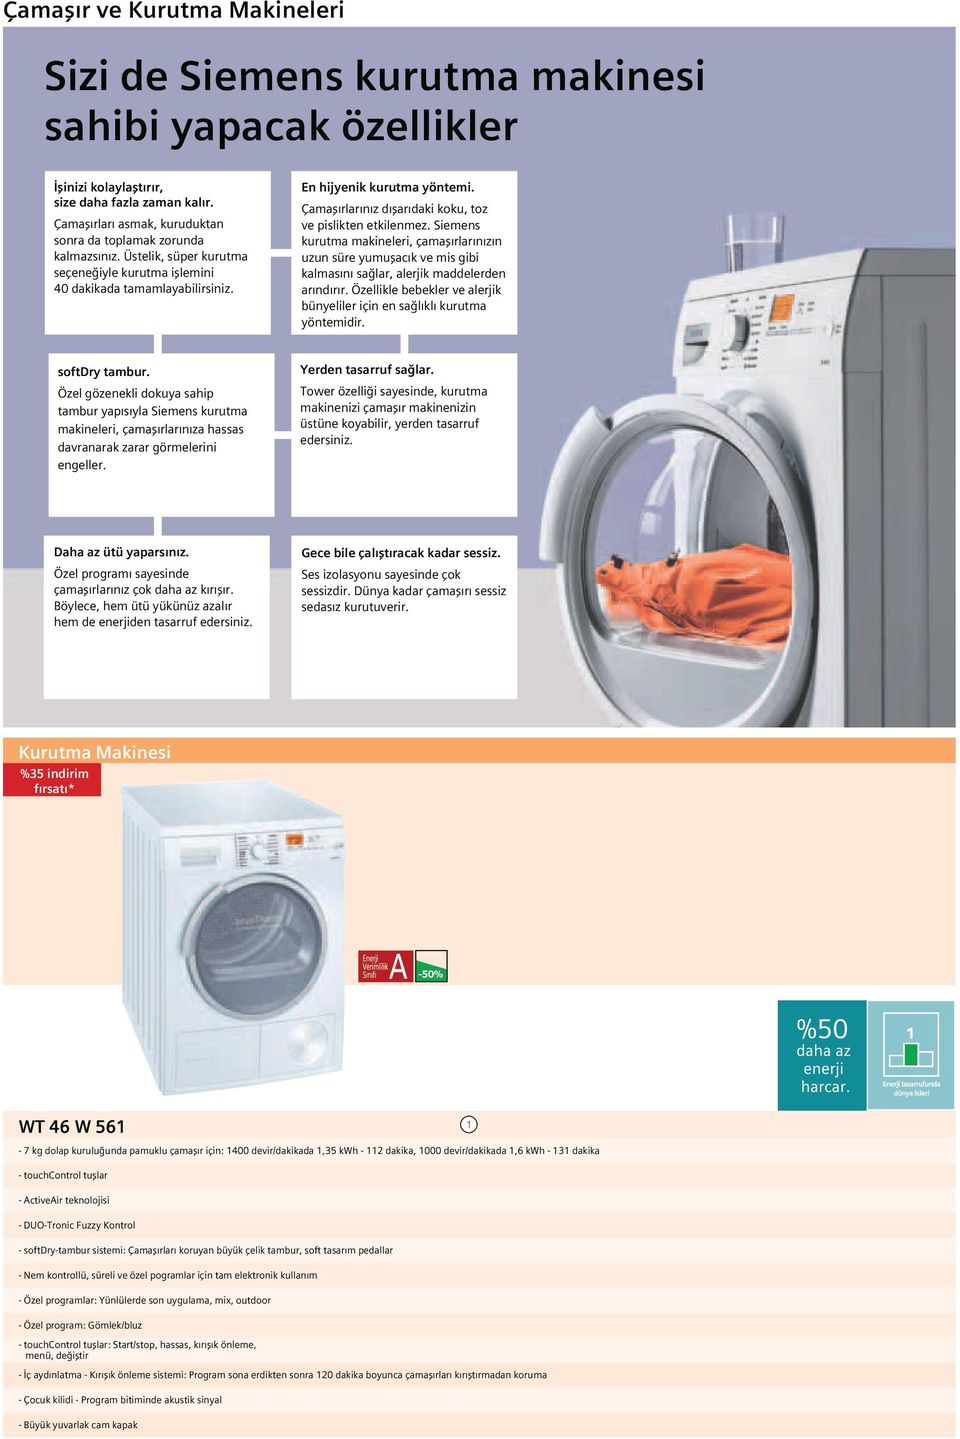 Çamaşırlarınız dışarıdaki koku, toz ve pislikten etkilenmez. Siemens kurutma makineleri, çamaşırlarınızın uzun süre yumuşacık ve mis gibi kalmasını sağlar, alerjik maddelerden arındırır.